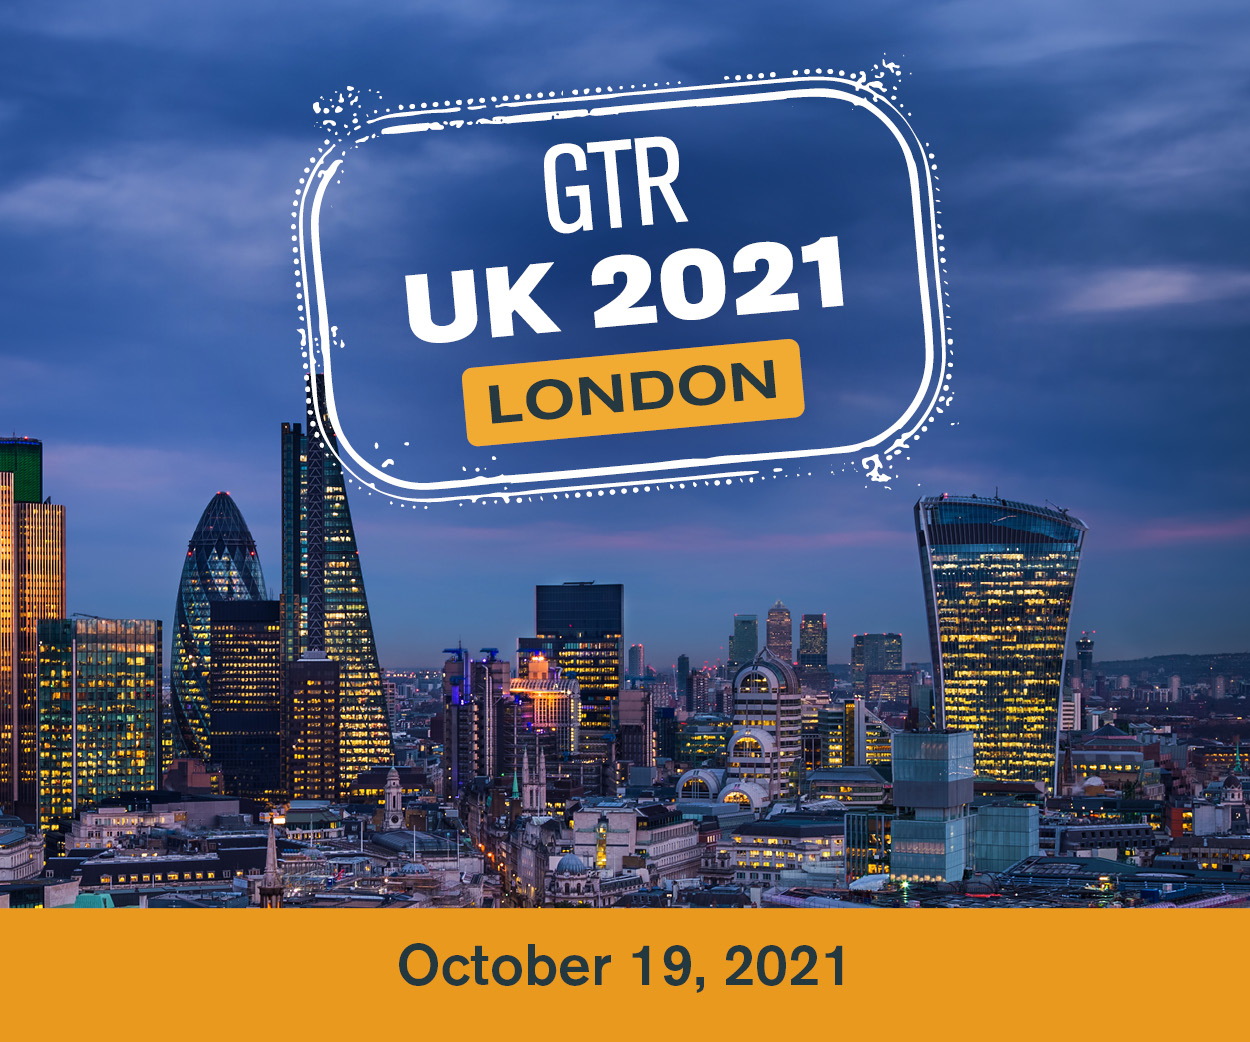 GTR UK 2021 London